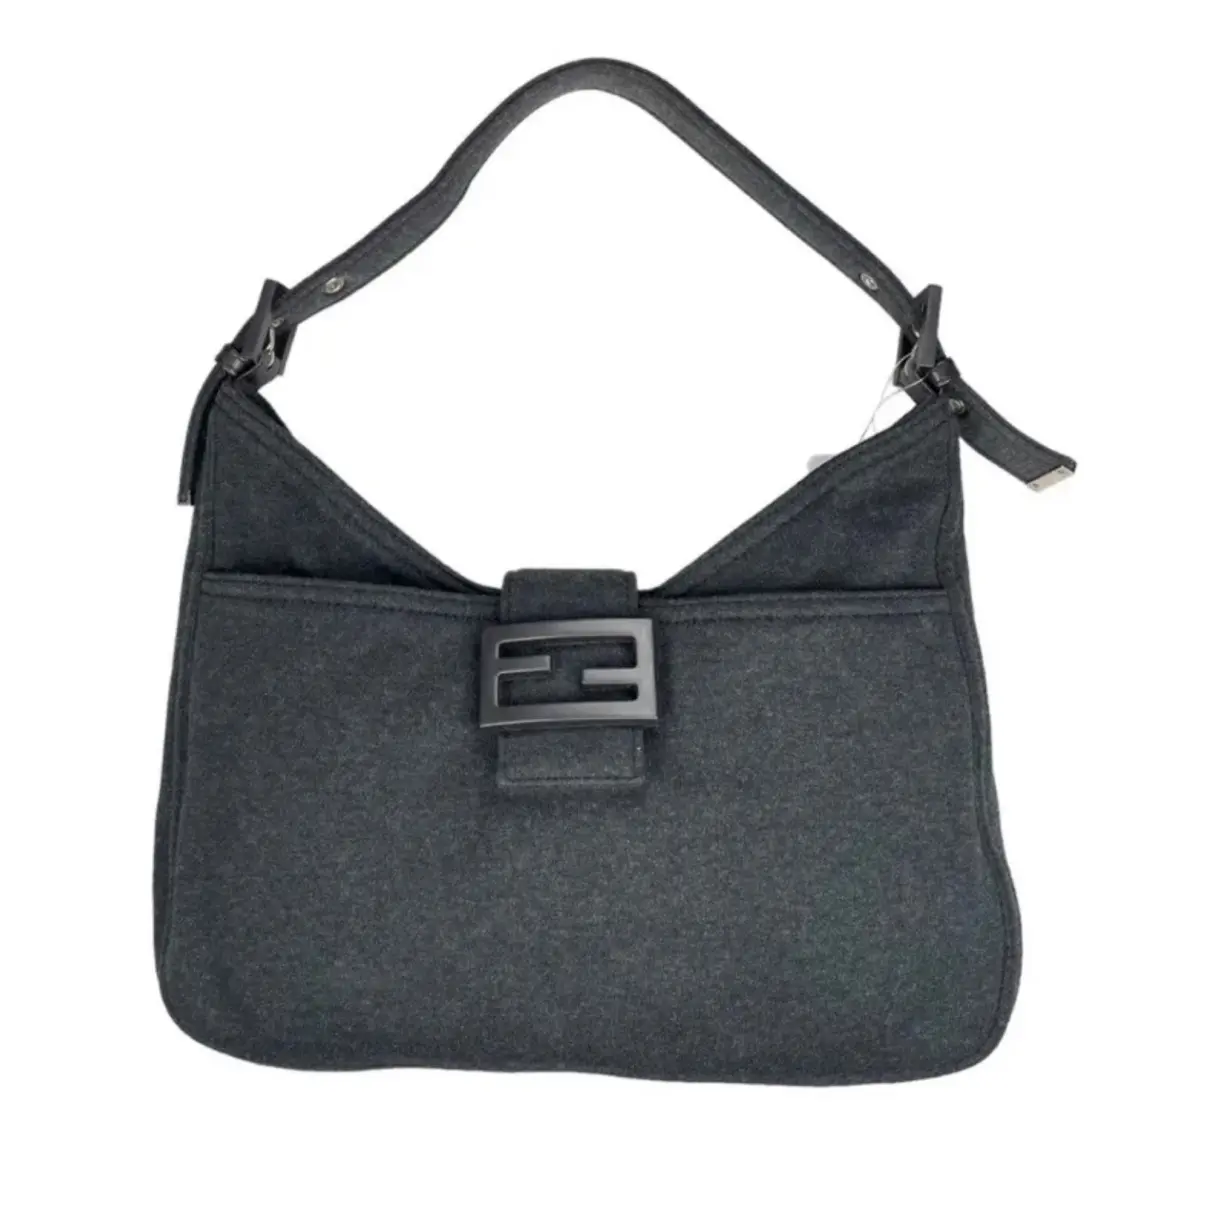 Baguette cloth handbag